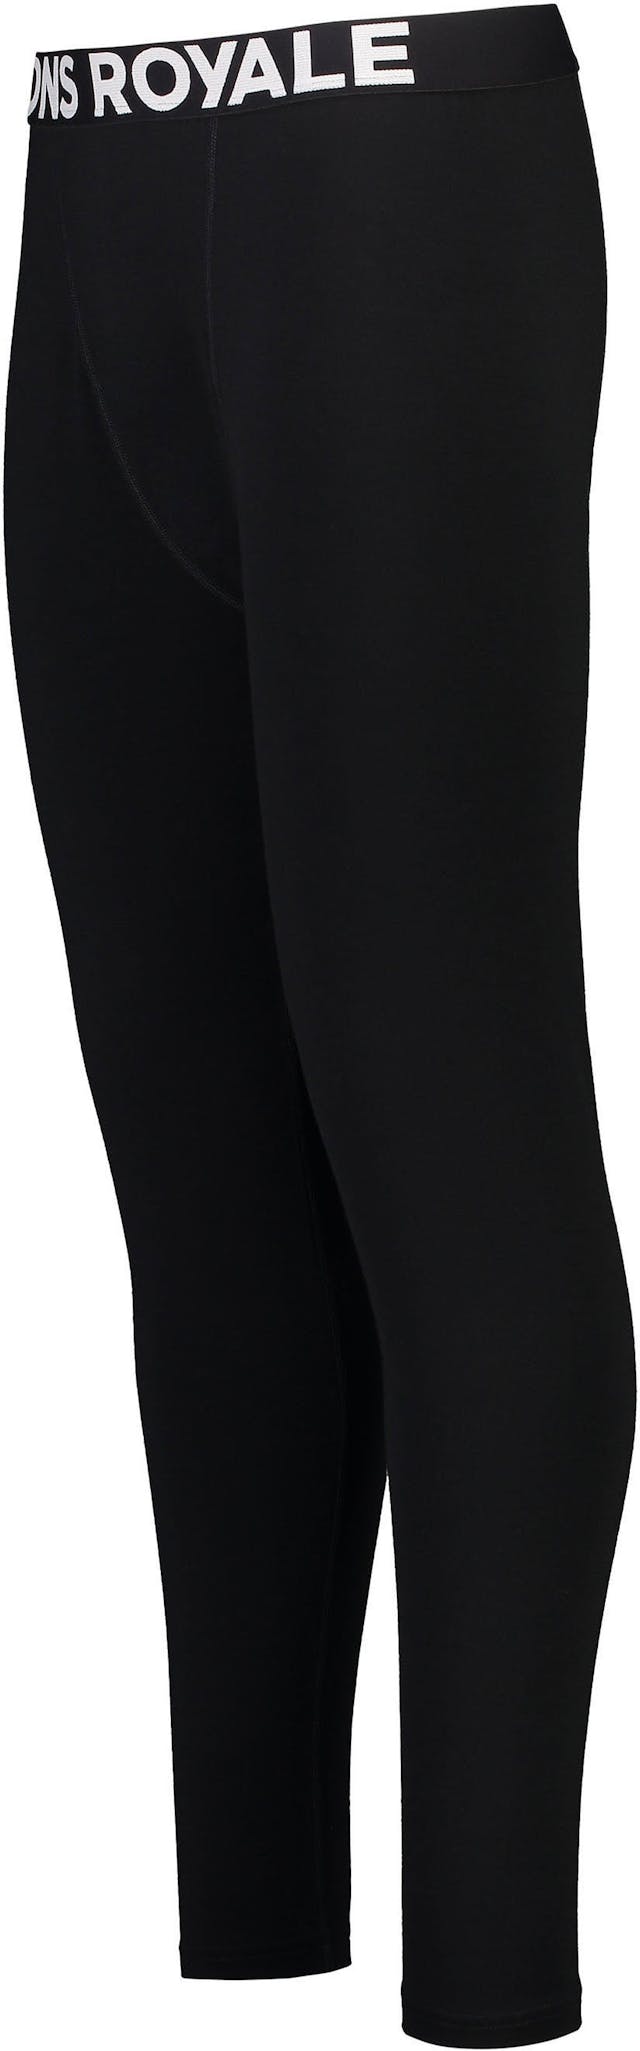 Product image for Cascade Merino Flex 200 Legging - Men's